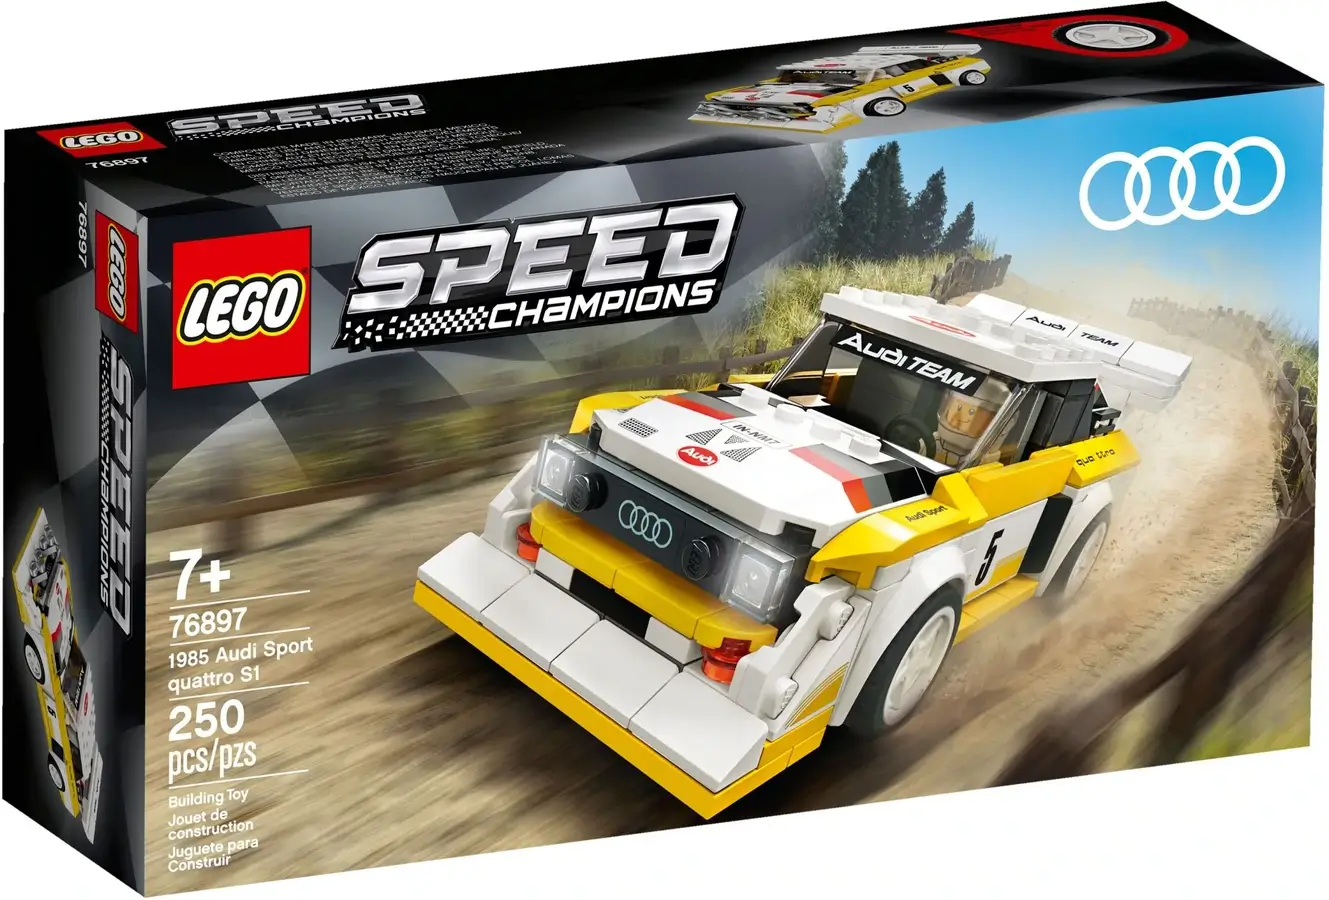 Pudełko zestawu 76897 z serii LEGO® Speed Champions – Audi Sport quattro S1